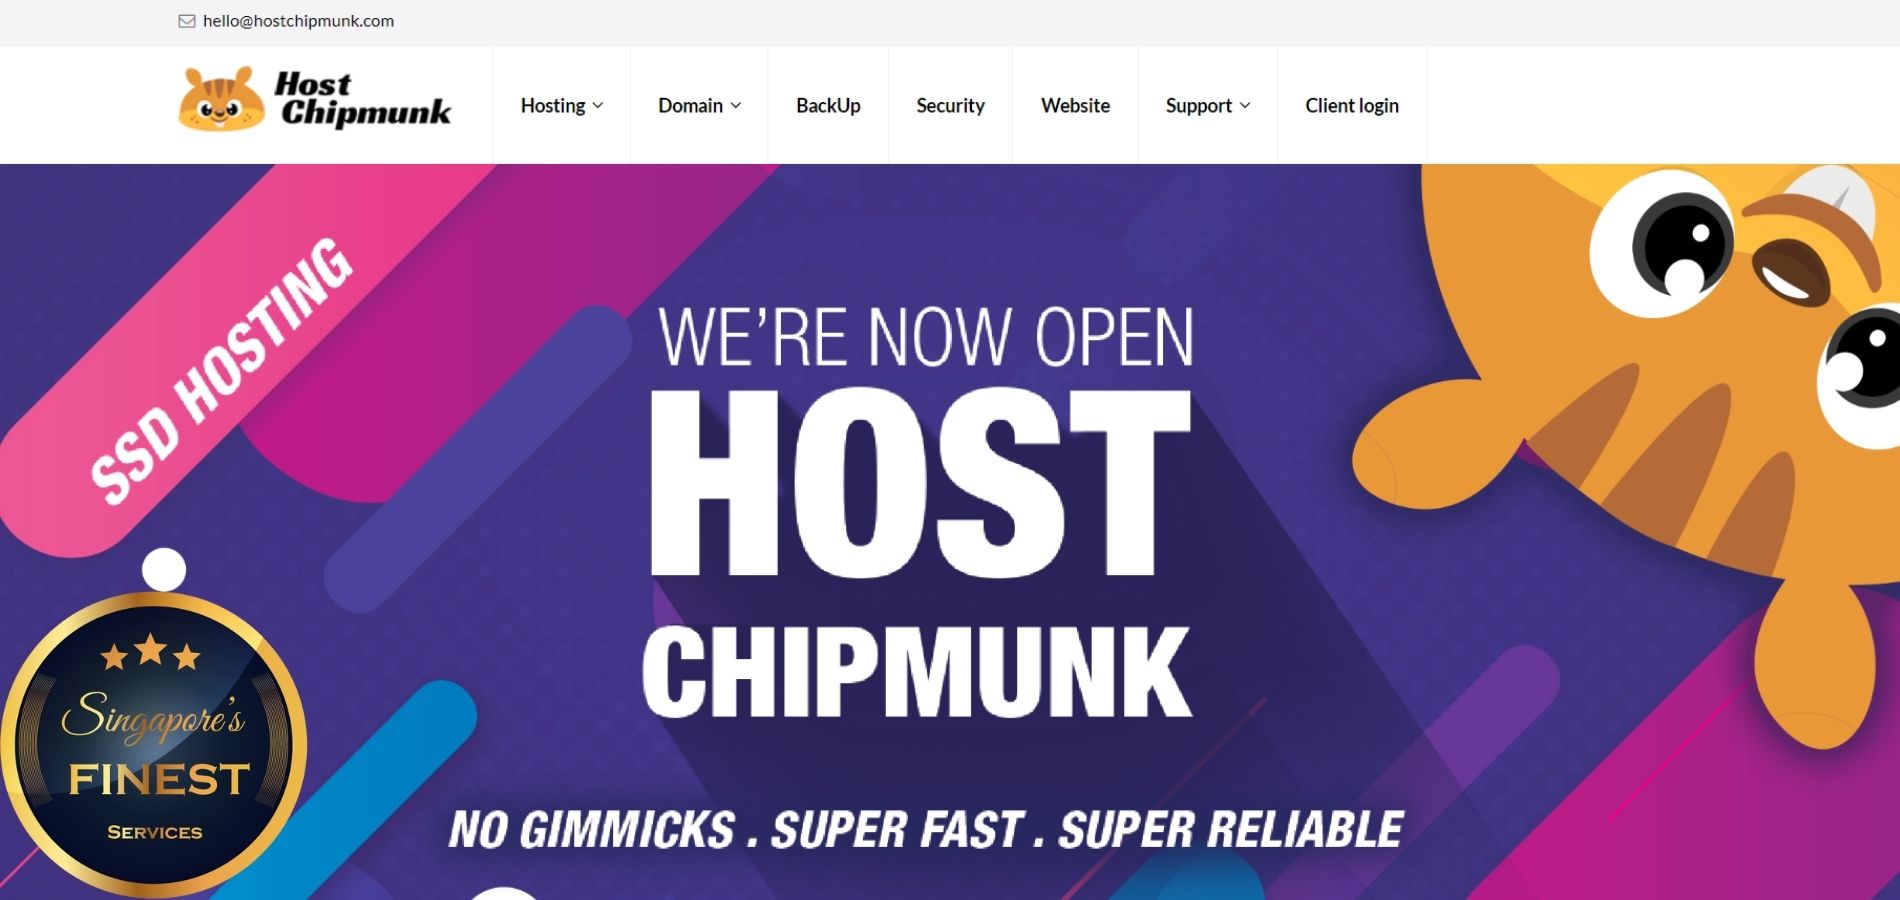 Host Chipmunk - Web Hosting Services